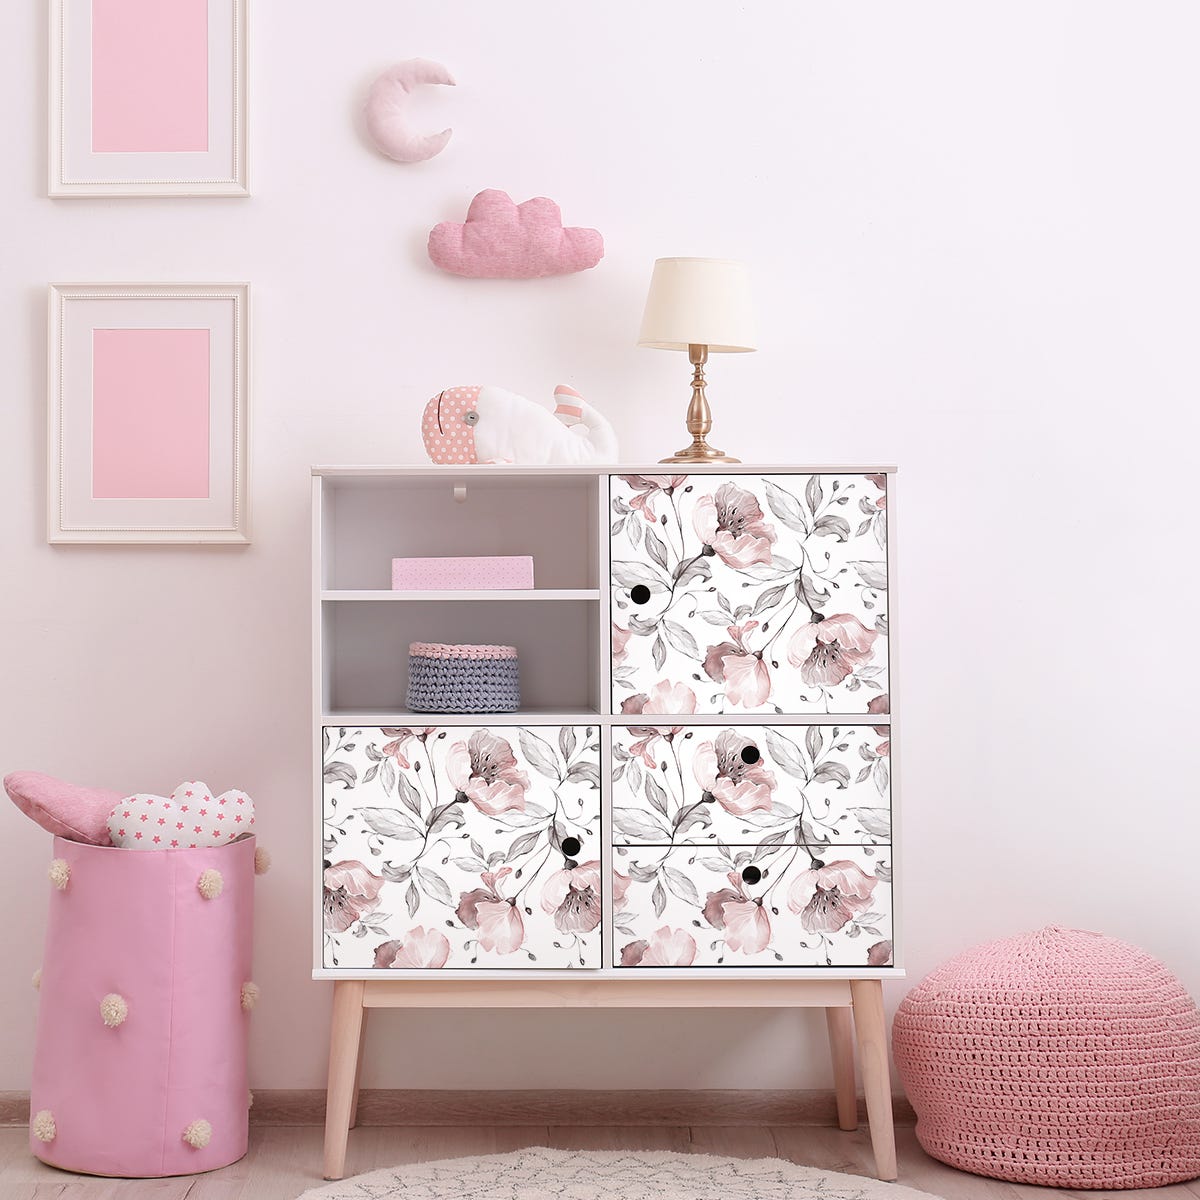 Vinilo mármol para muebles Rosa y blanco - adhesivo de pared -  revestimiento sticker mural decorativo - 40x60cm